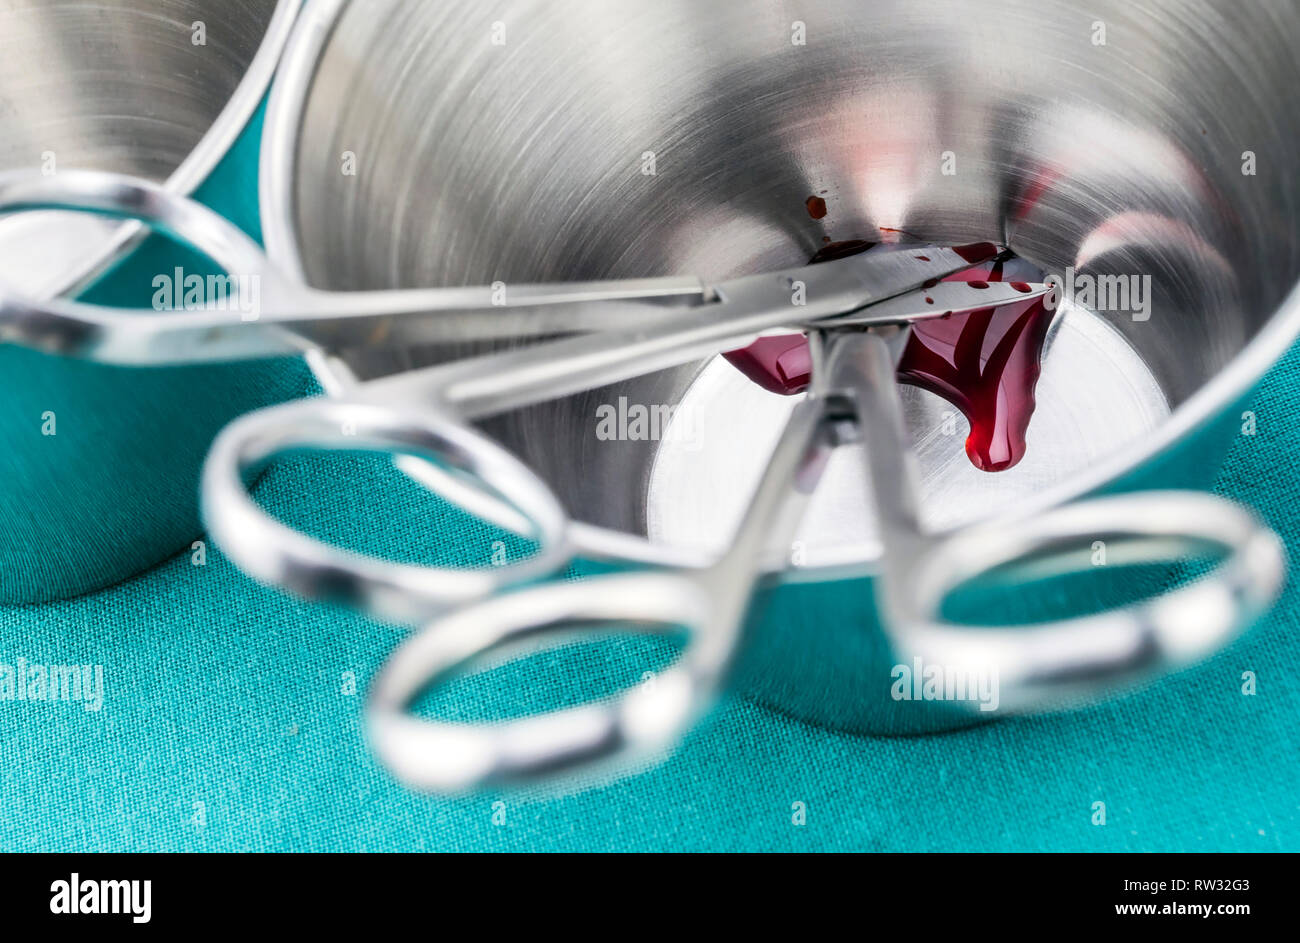 Chirurgische Schere mit Blut auf einem Tablett Metall in einem Operationssaal, Zusammensetzung horizontale, konzeptionelle Bild getränkt Stockfoto